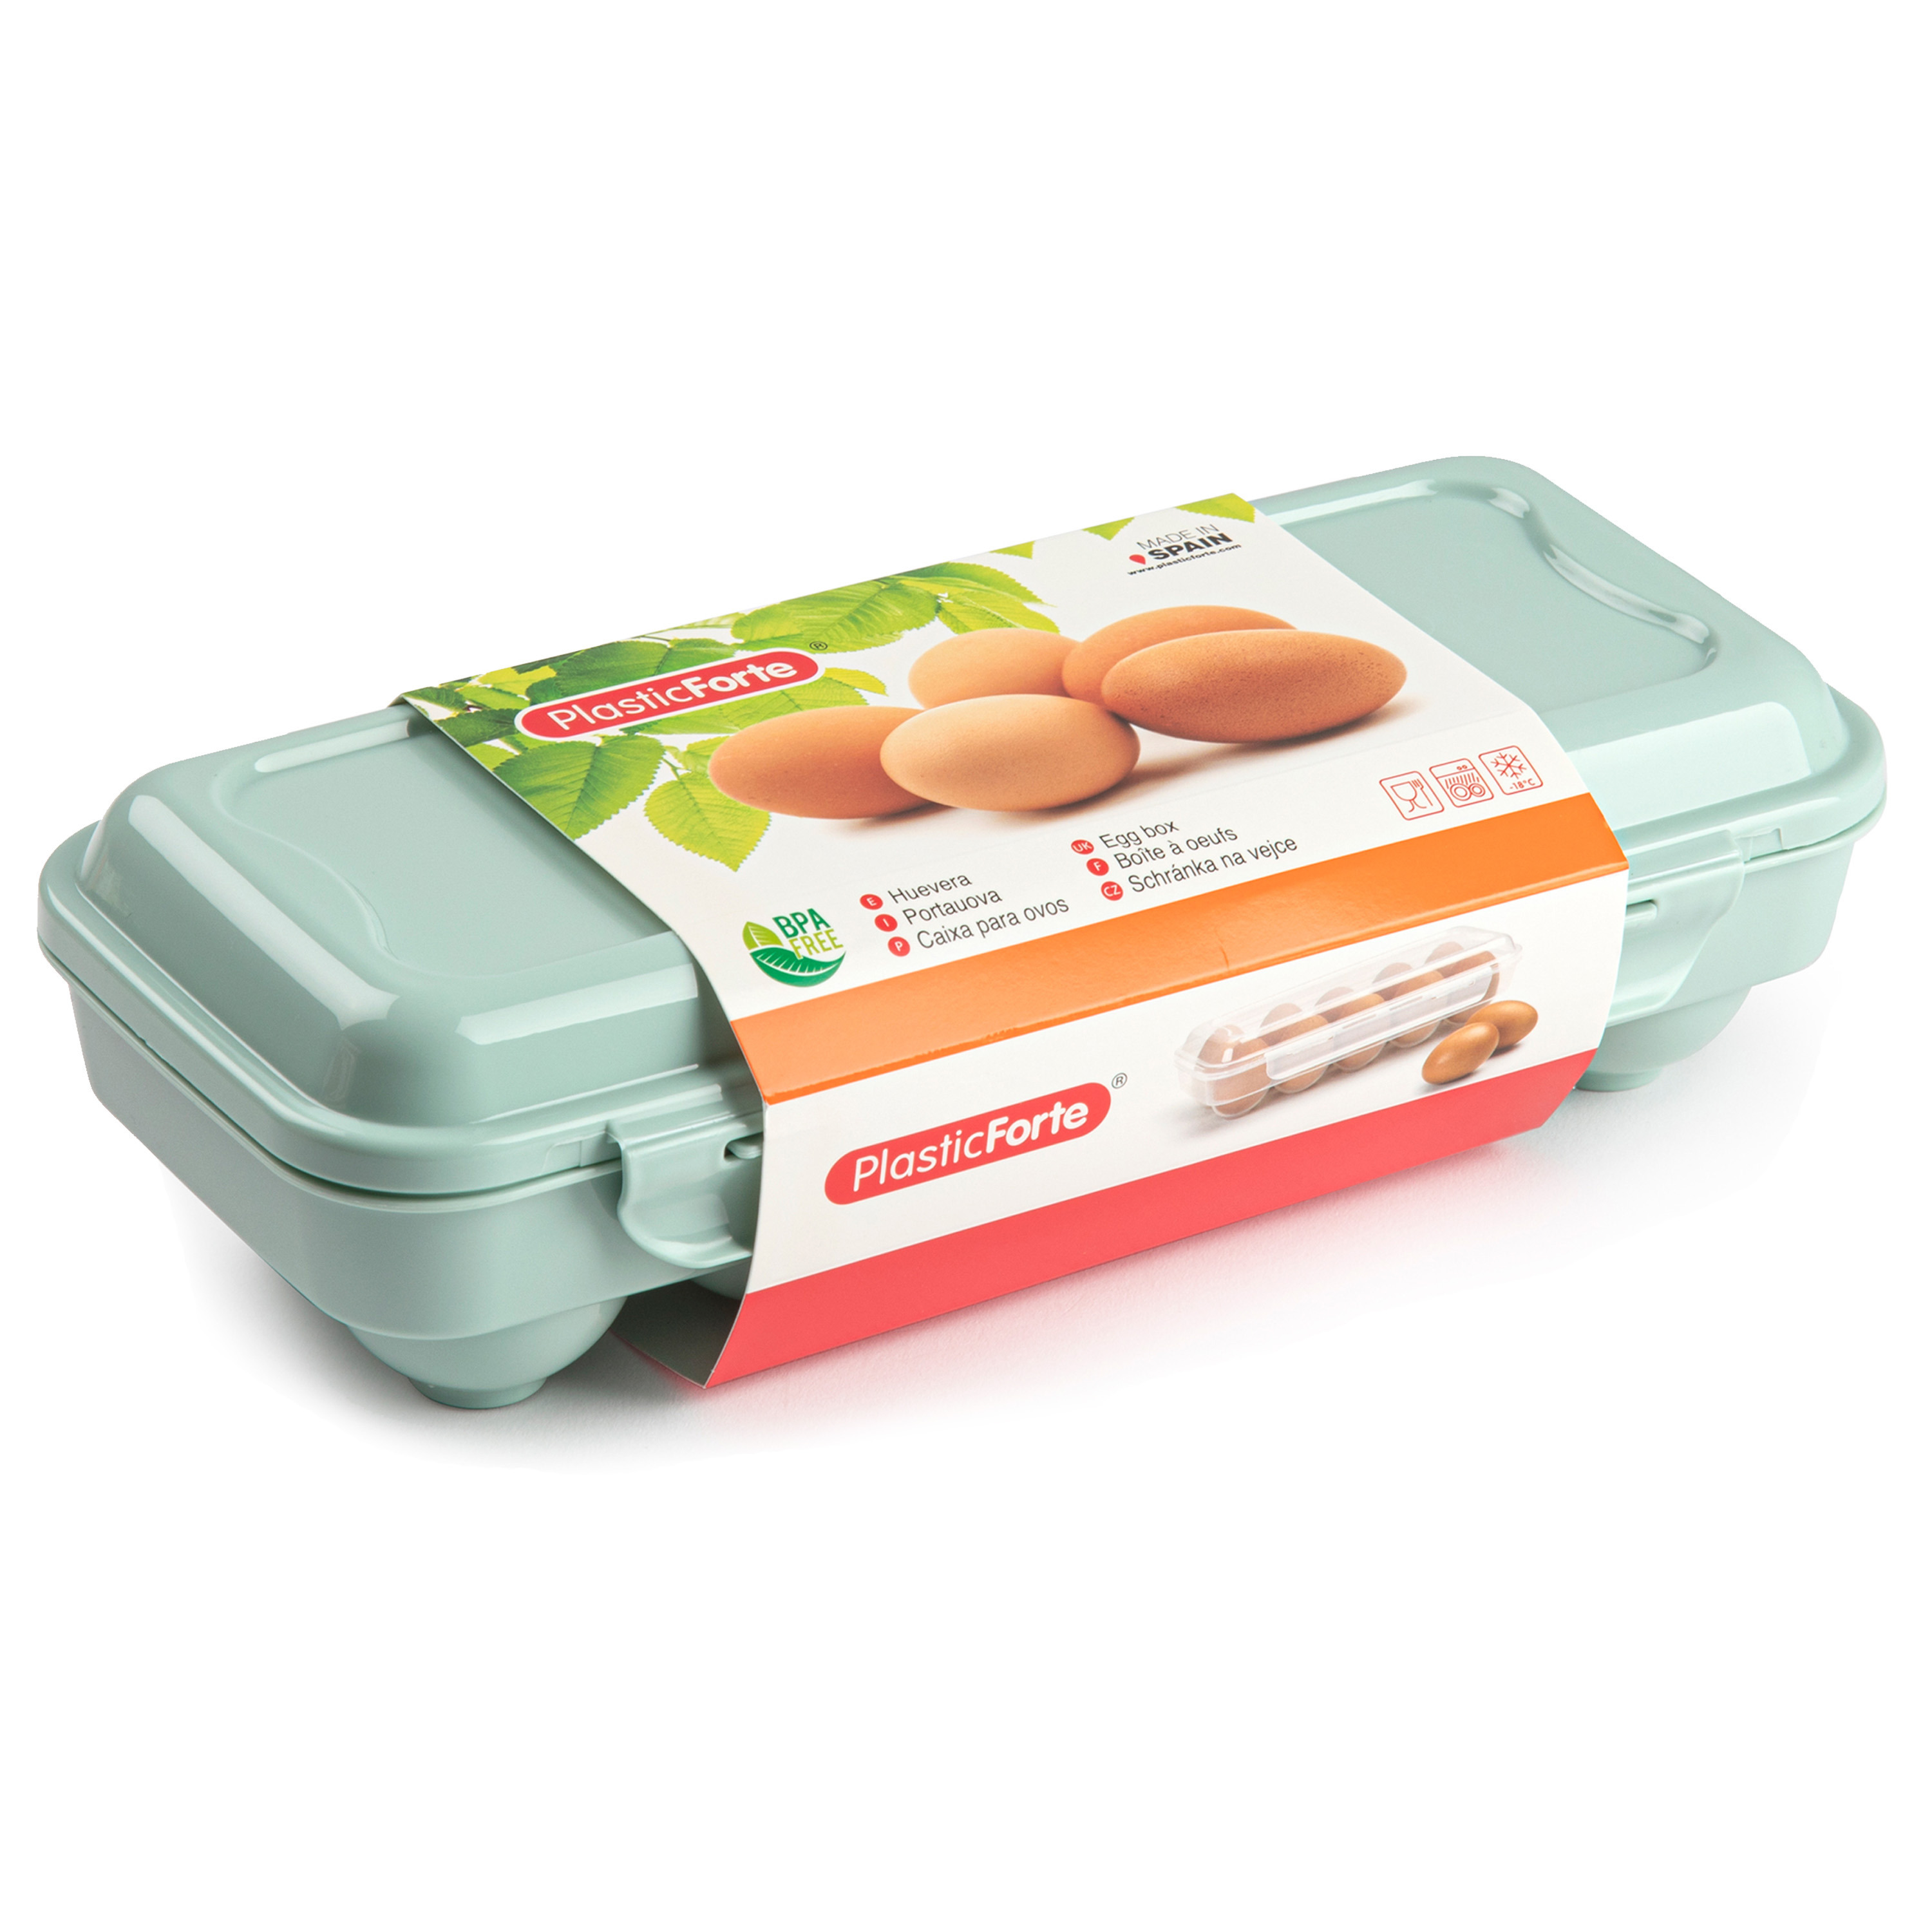 Eierdoos koelkast organizer eierhouder 10 eieren mint groen kunststof 27 x 12,5 cm